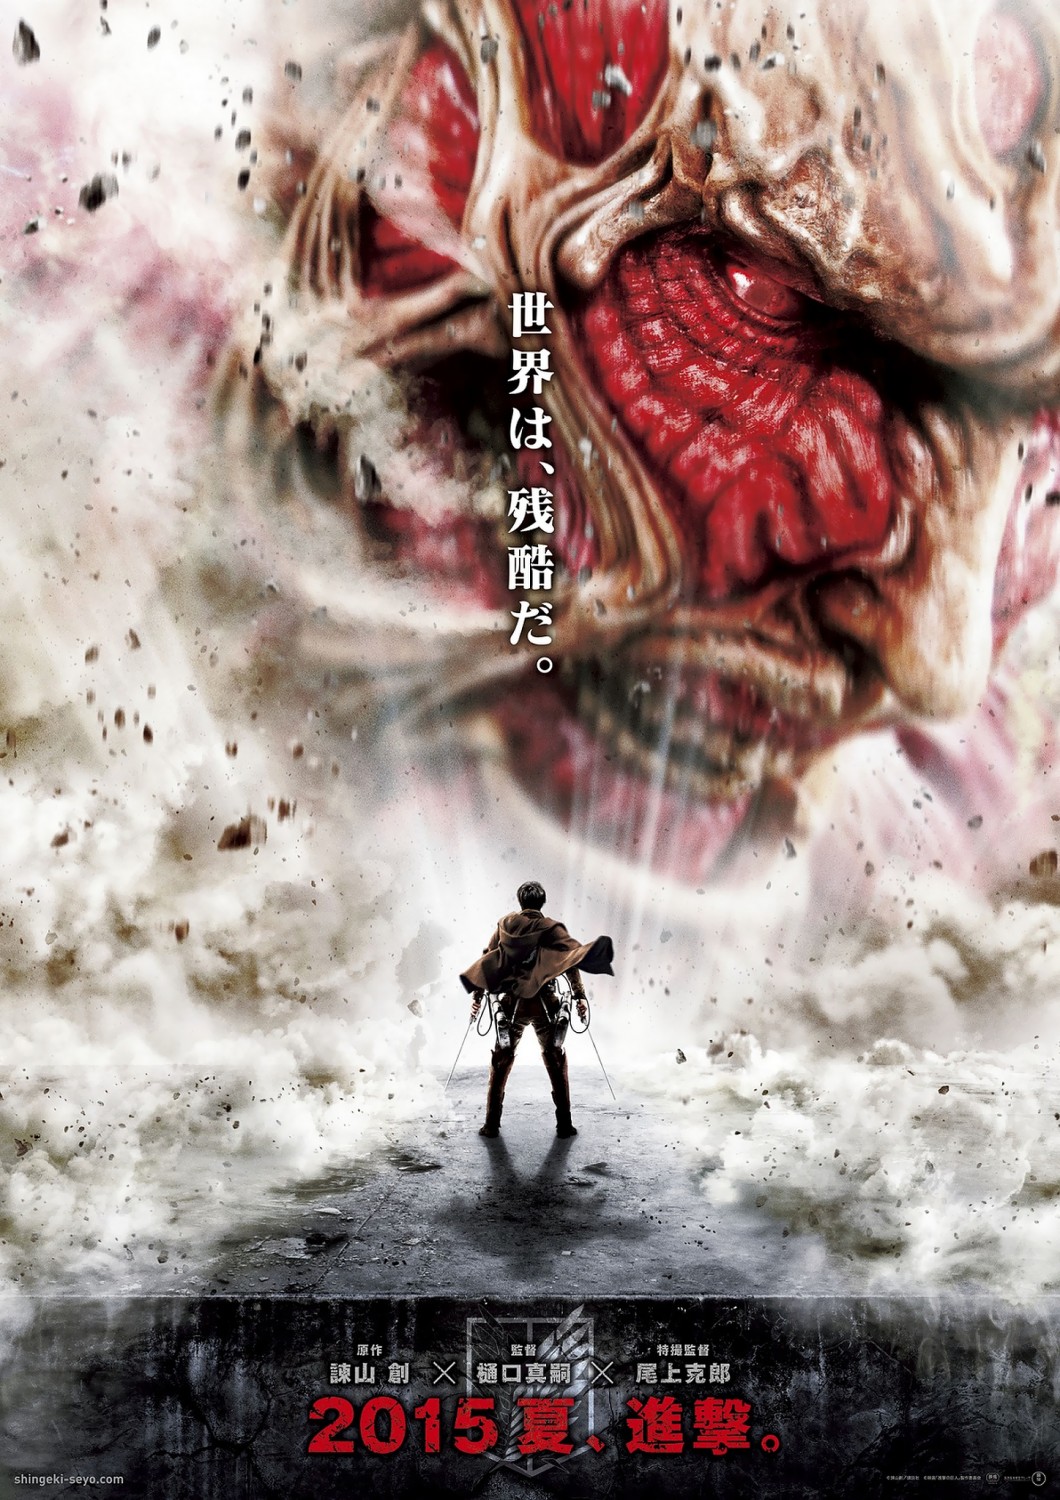 Extra Large Movie Poster Image for Shingeki no kyojin: Zenpen (#14 of 14)